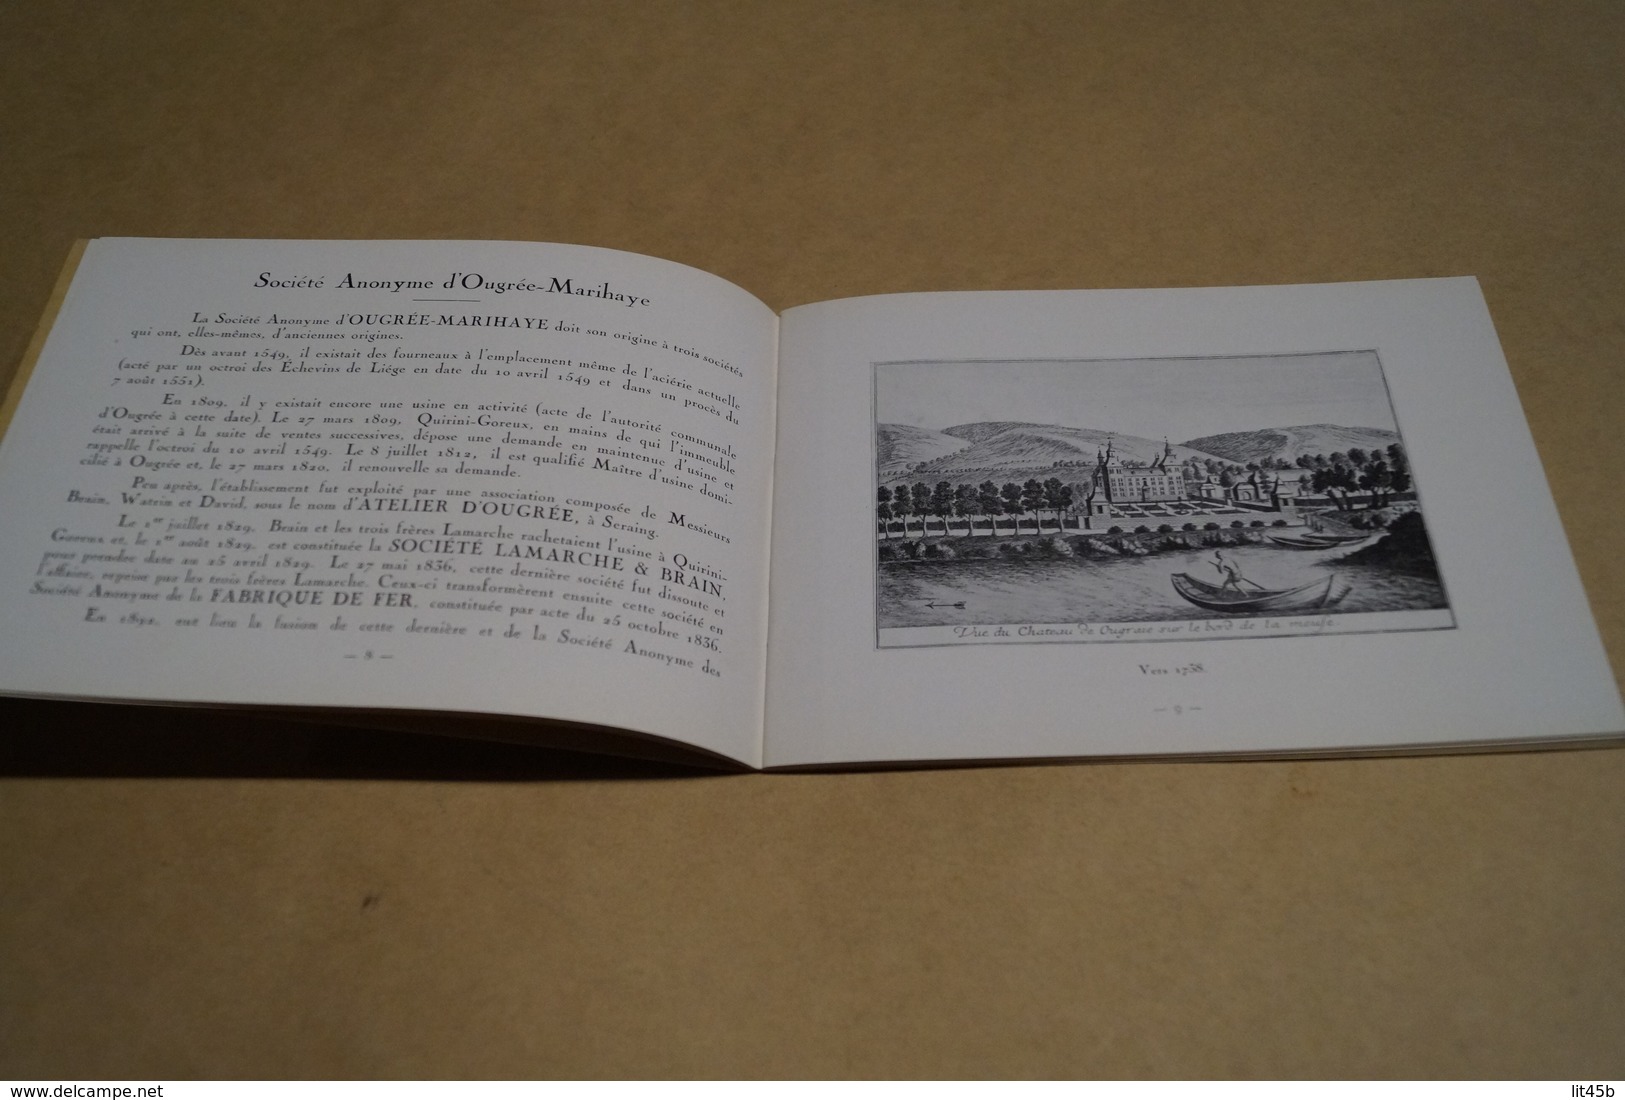 ancien catalogue,socièté commerciale de Belgique,Ougrée - Marihaye,Mai 1930,dimensions ; 18 Cm./13 Cm.47 pages